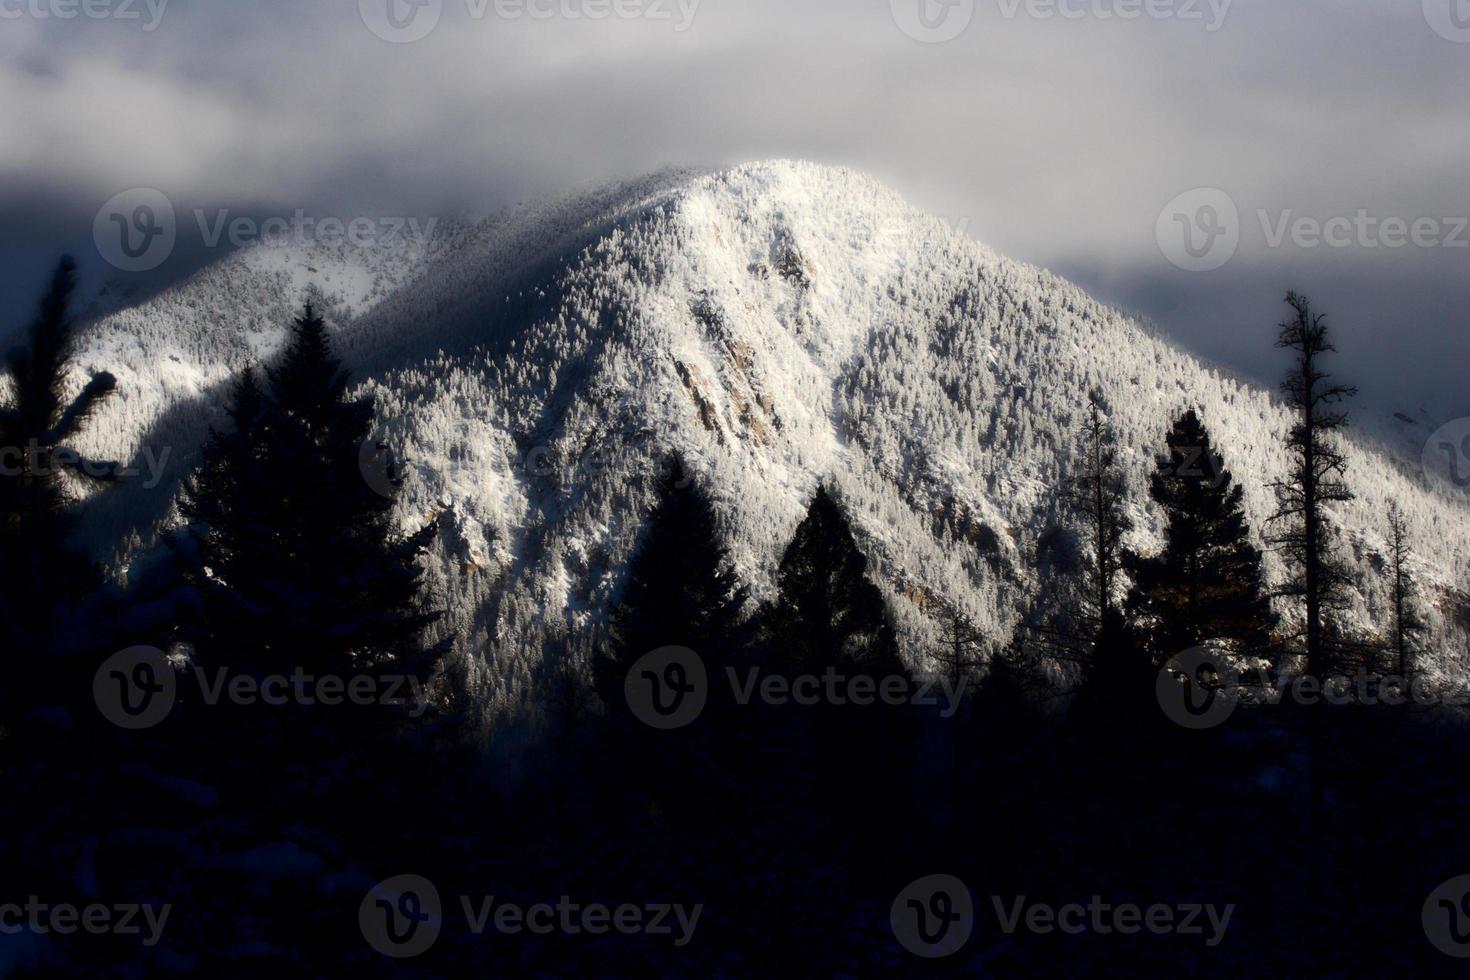 montañas rocosas en invierno foto